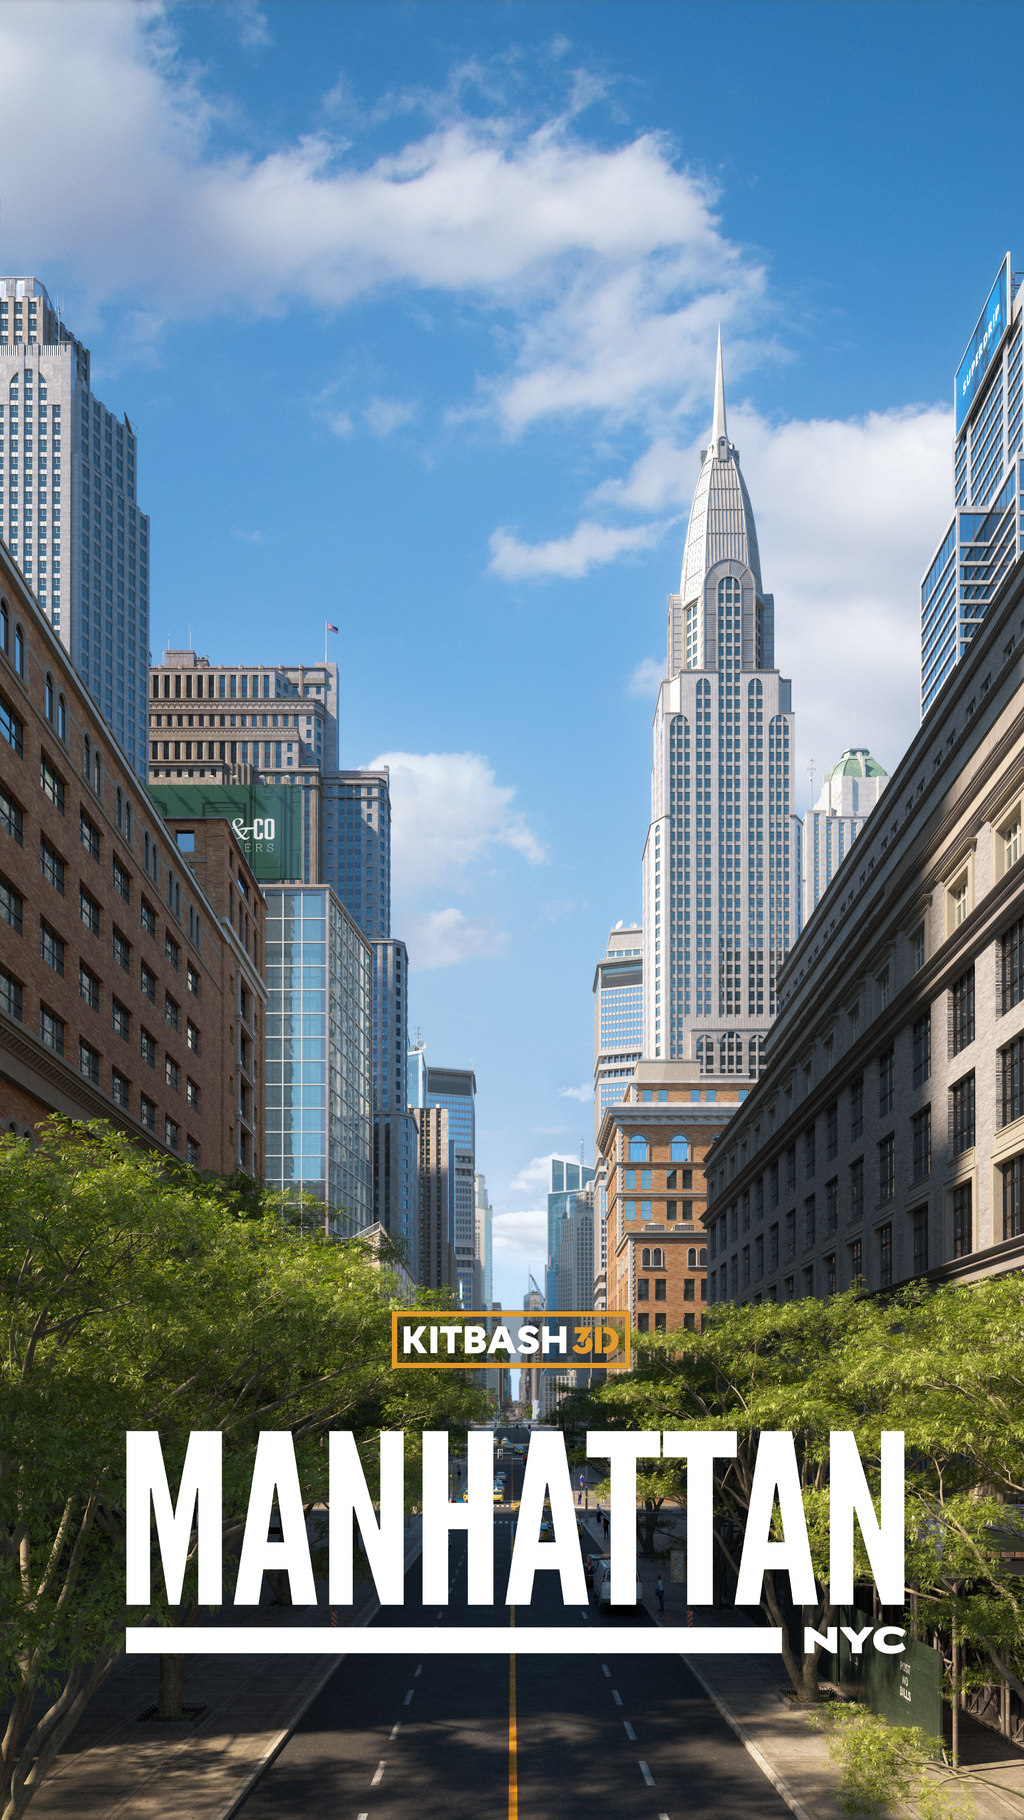 Kitbash3D – Manhattan